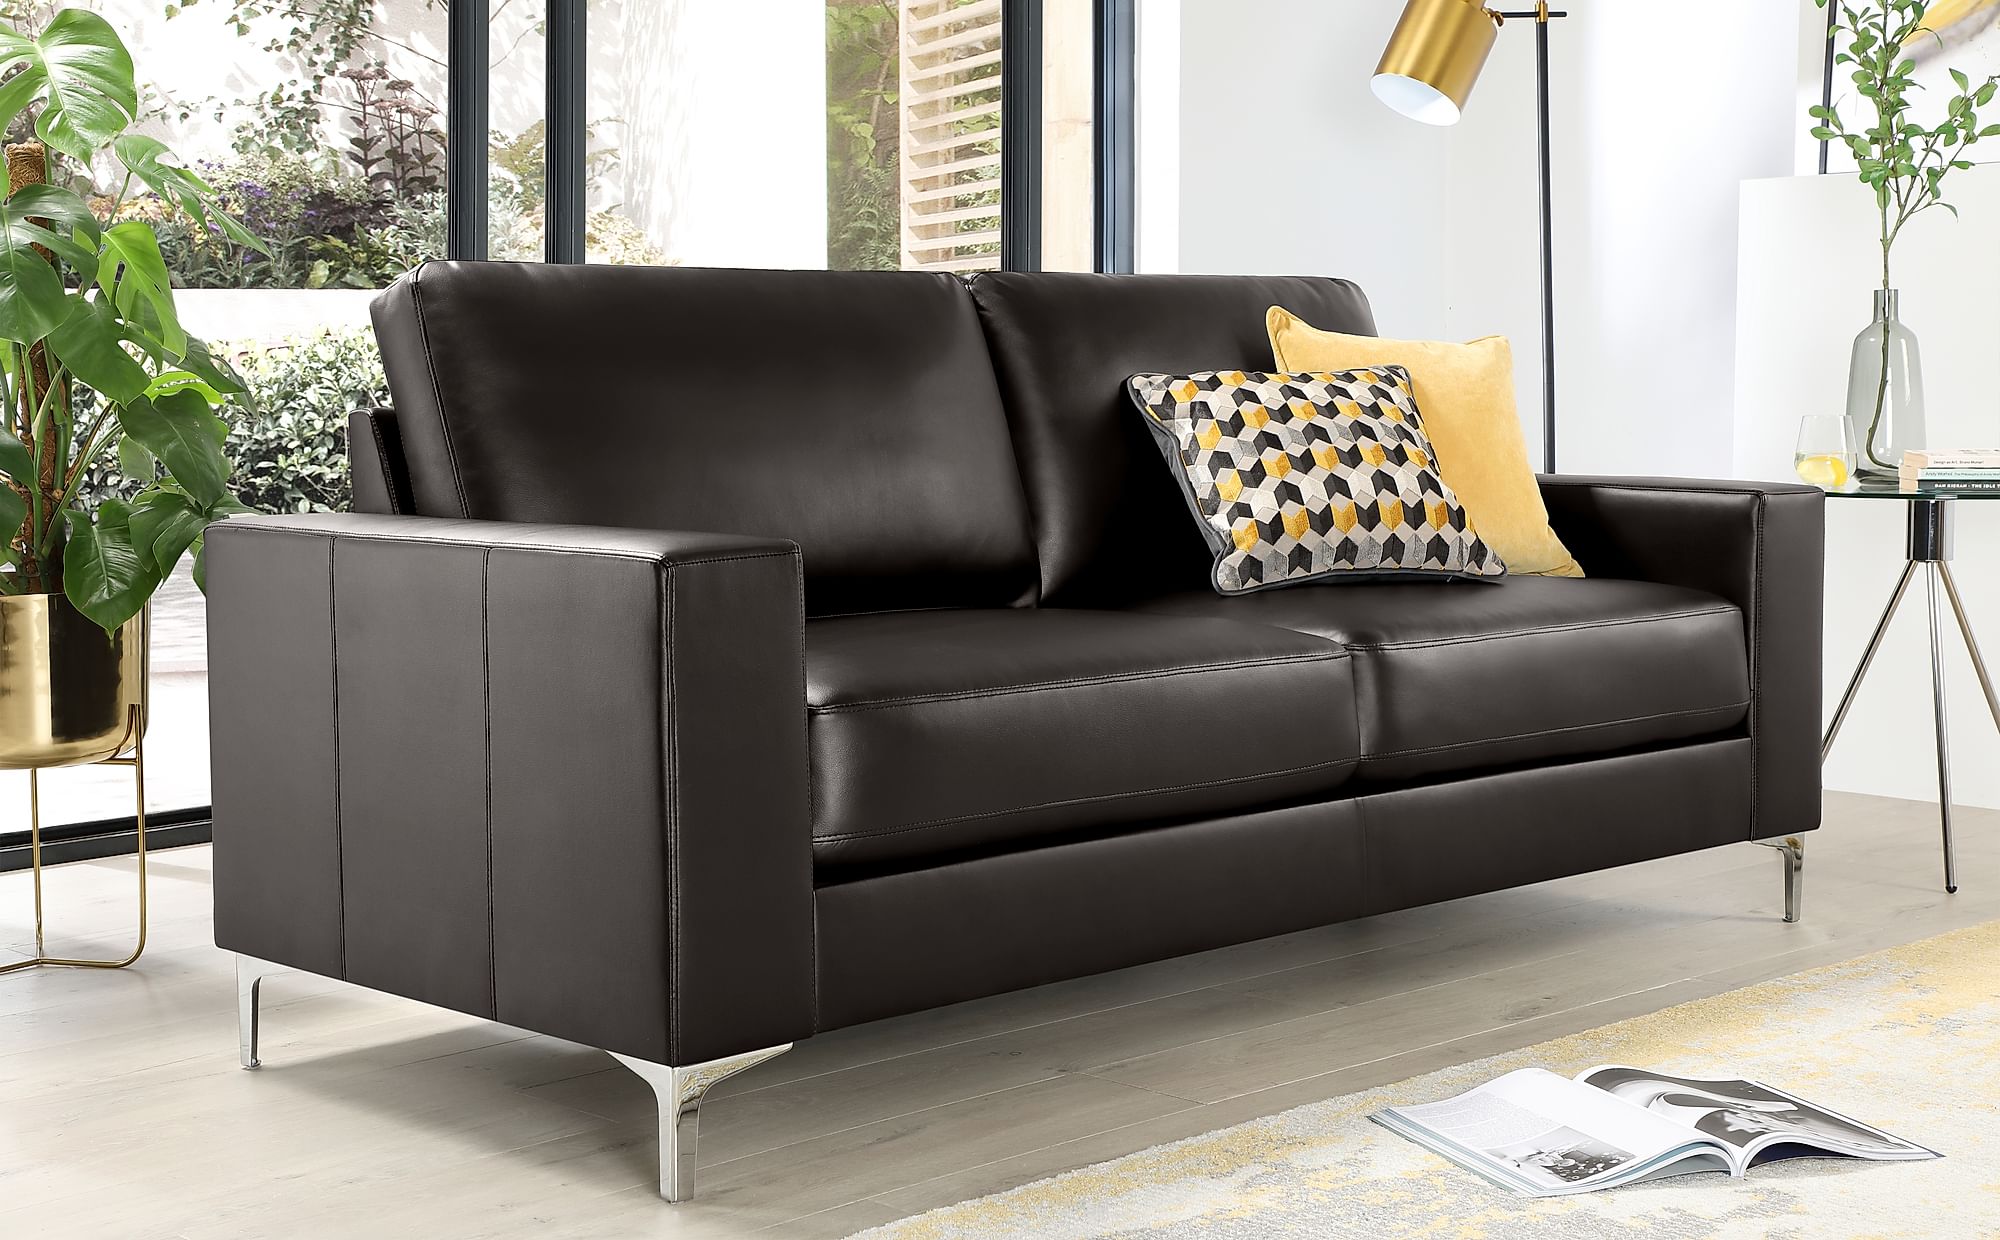 3 seater leather sofa malaysia